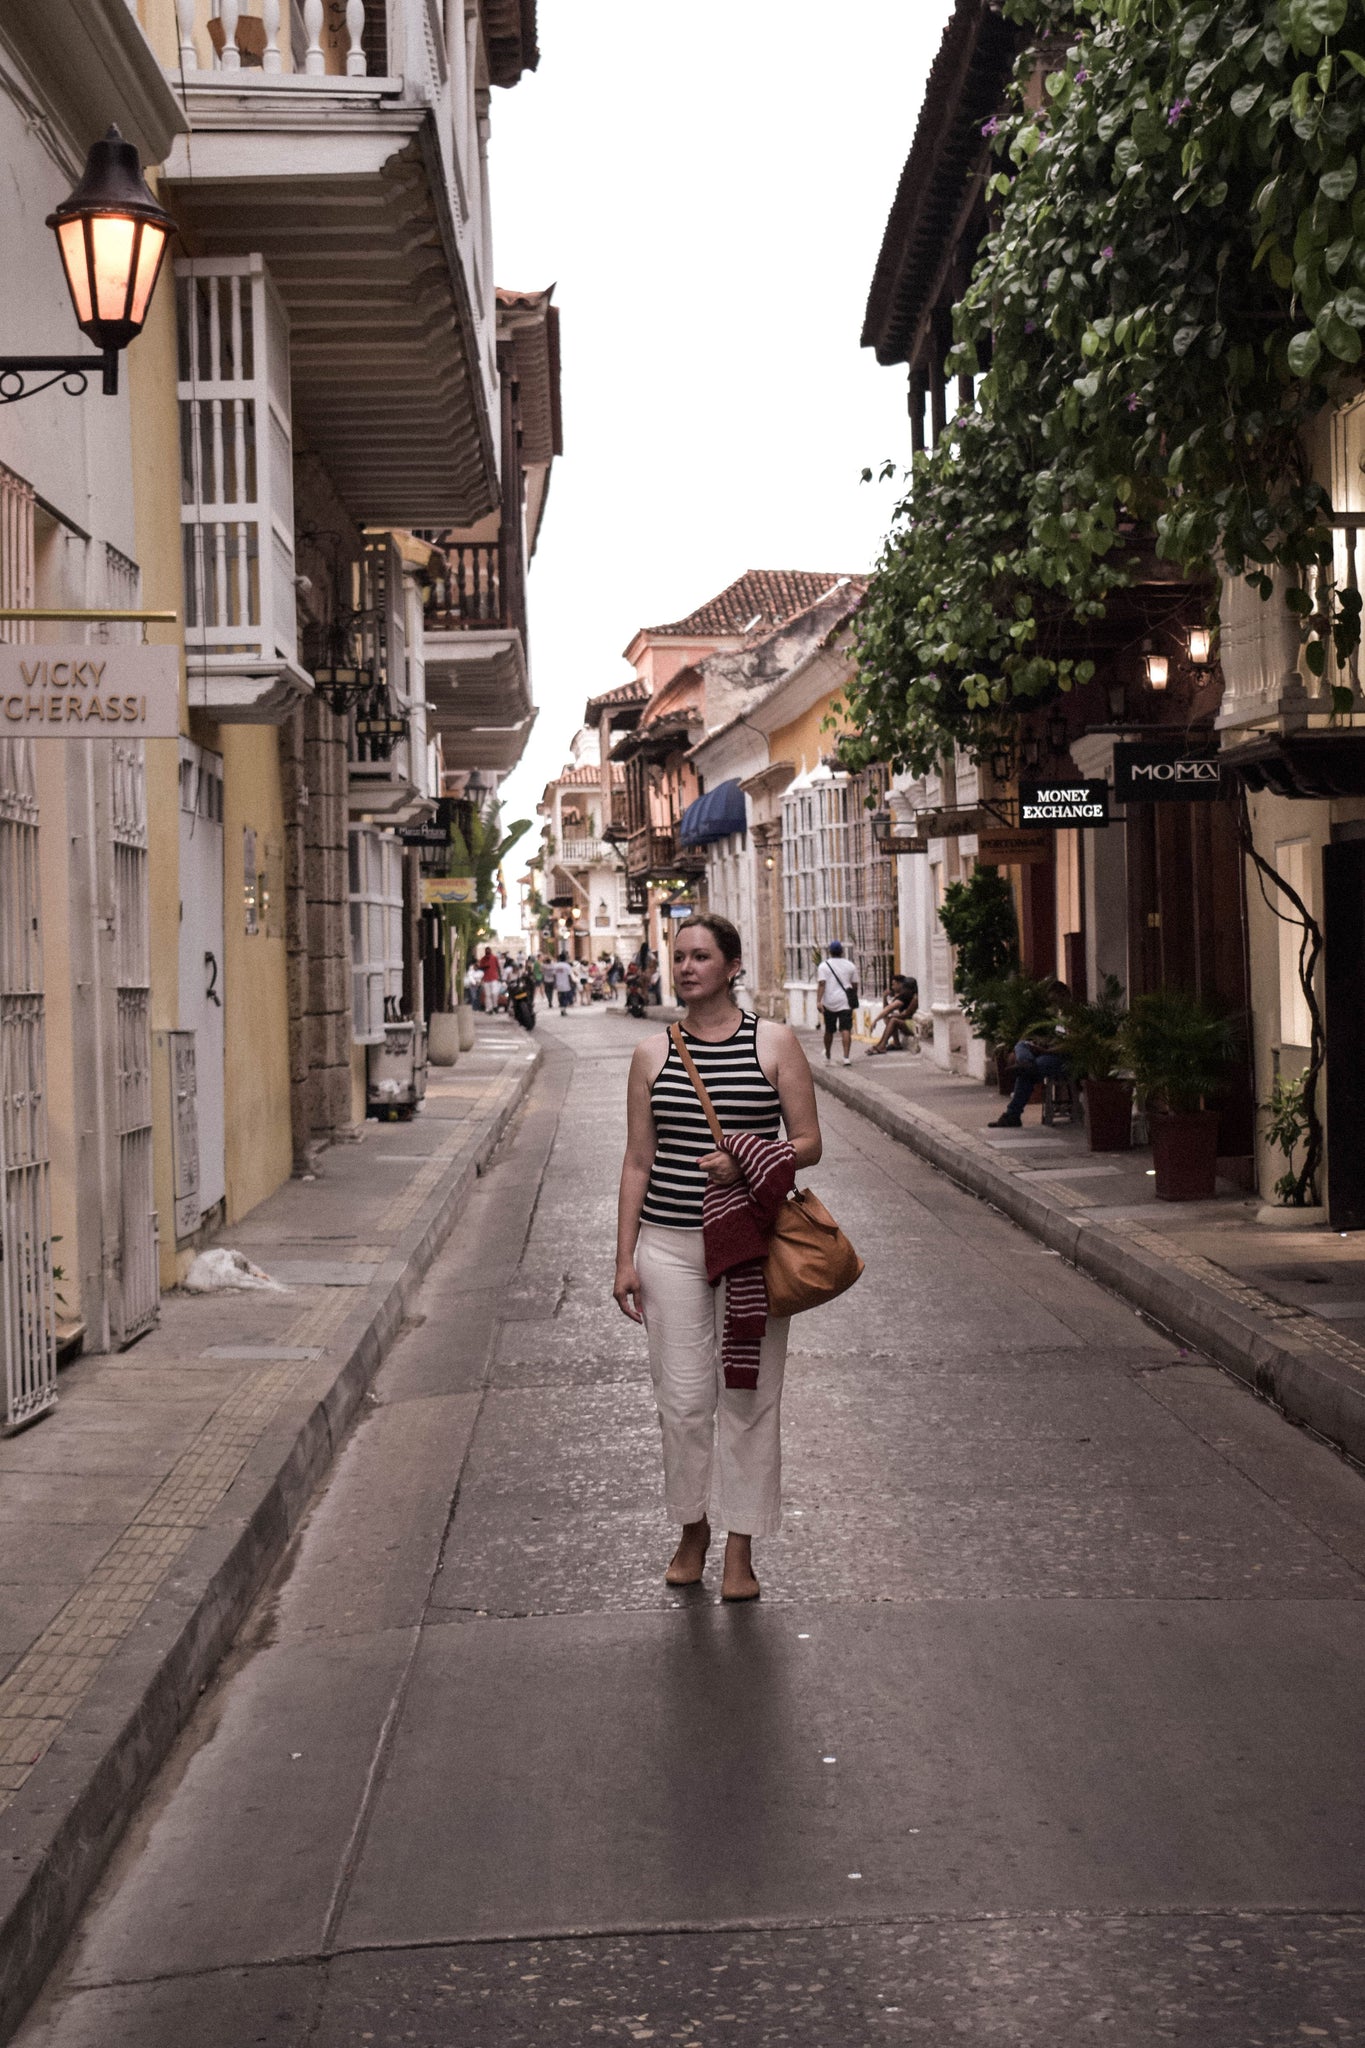 Cartagena de Indias: A dream for photographers